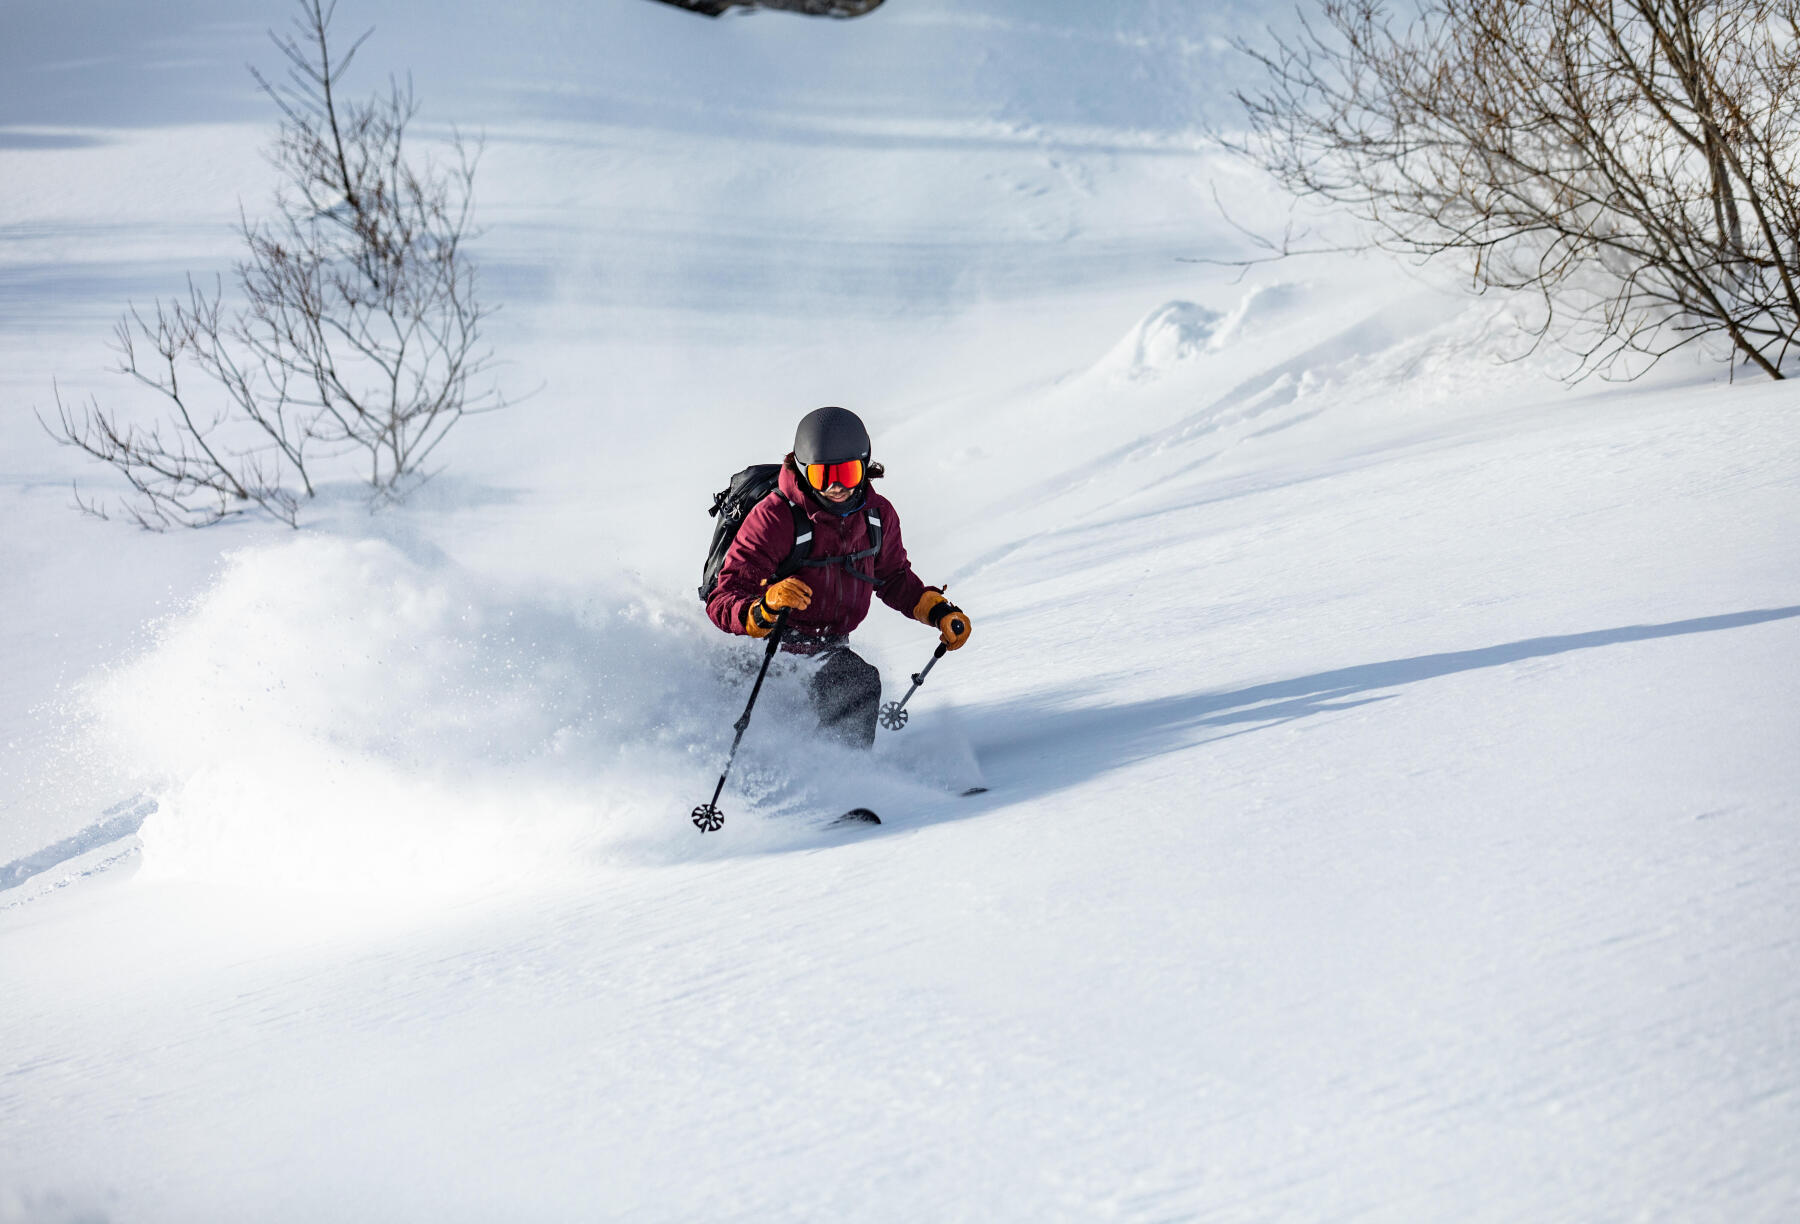 I vantaggi dello sci, uno sport da scoprire con i consigli sportivi Decathlon